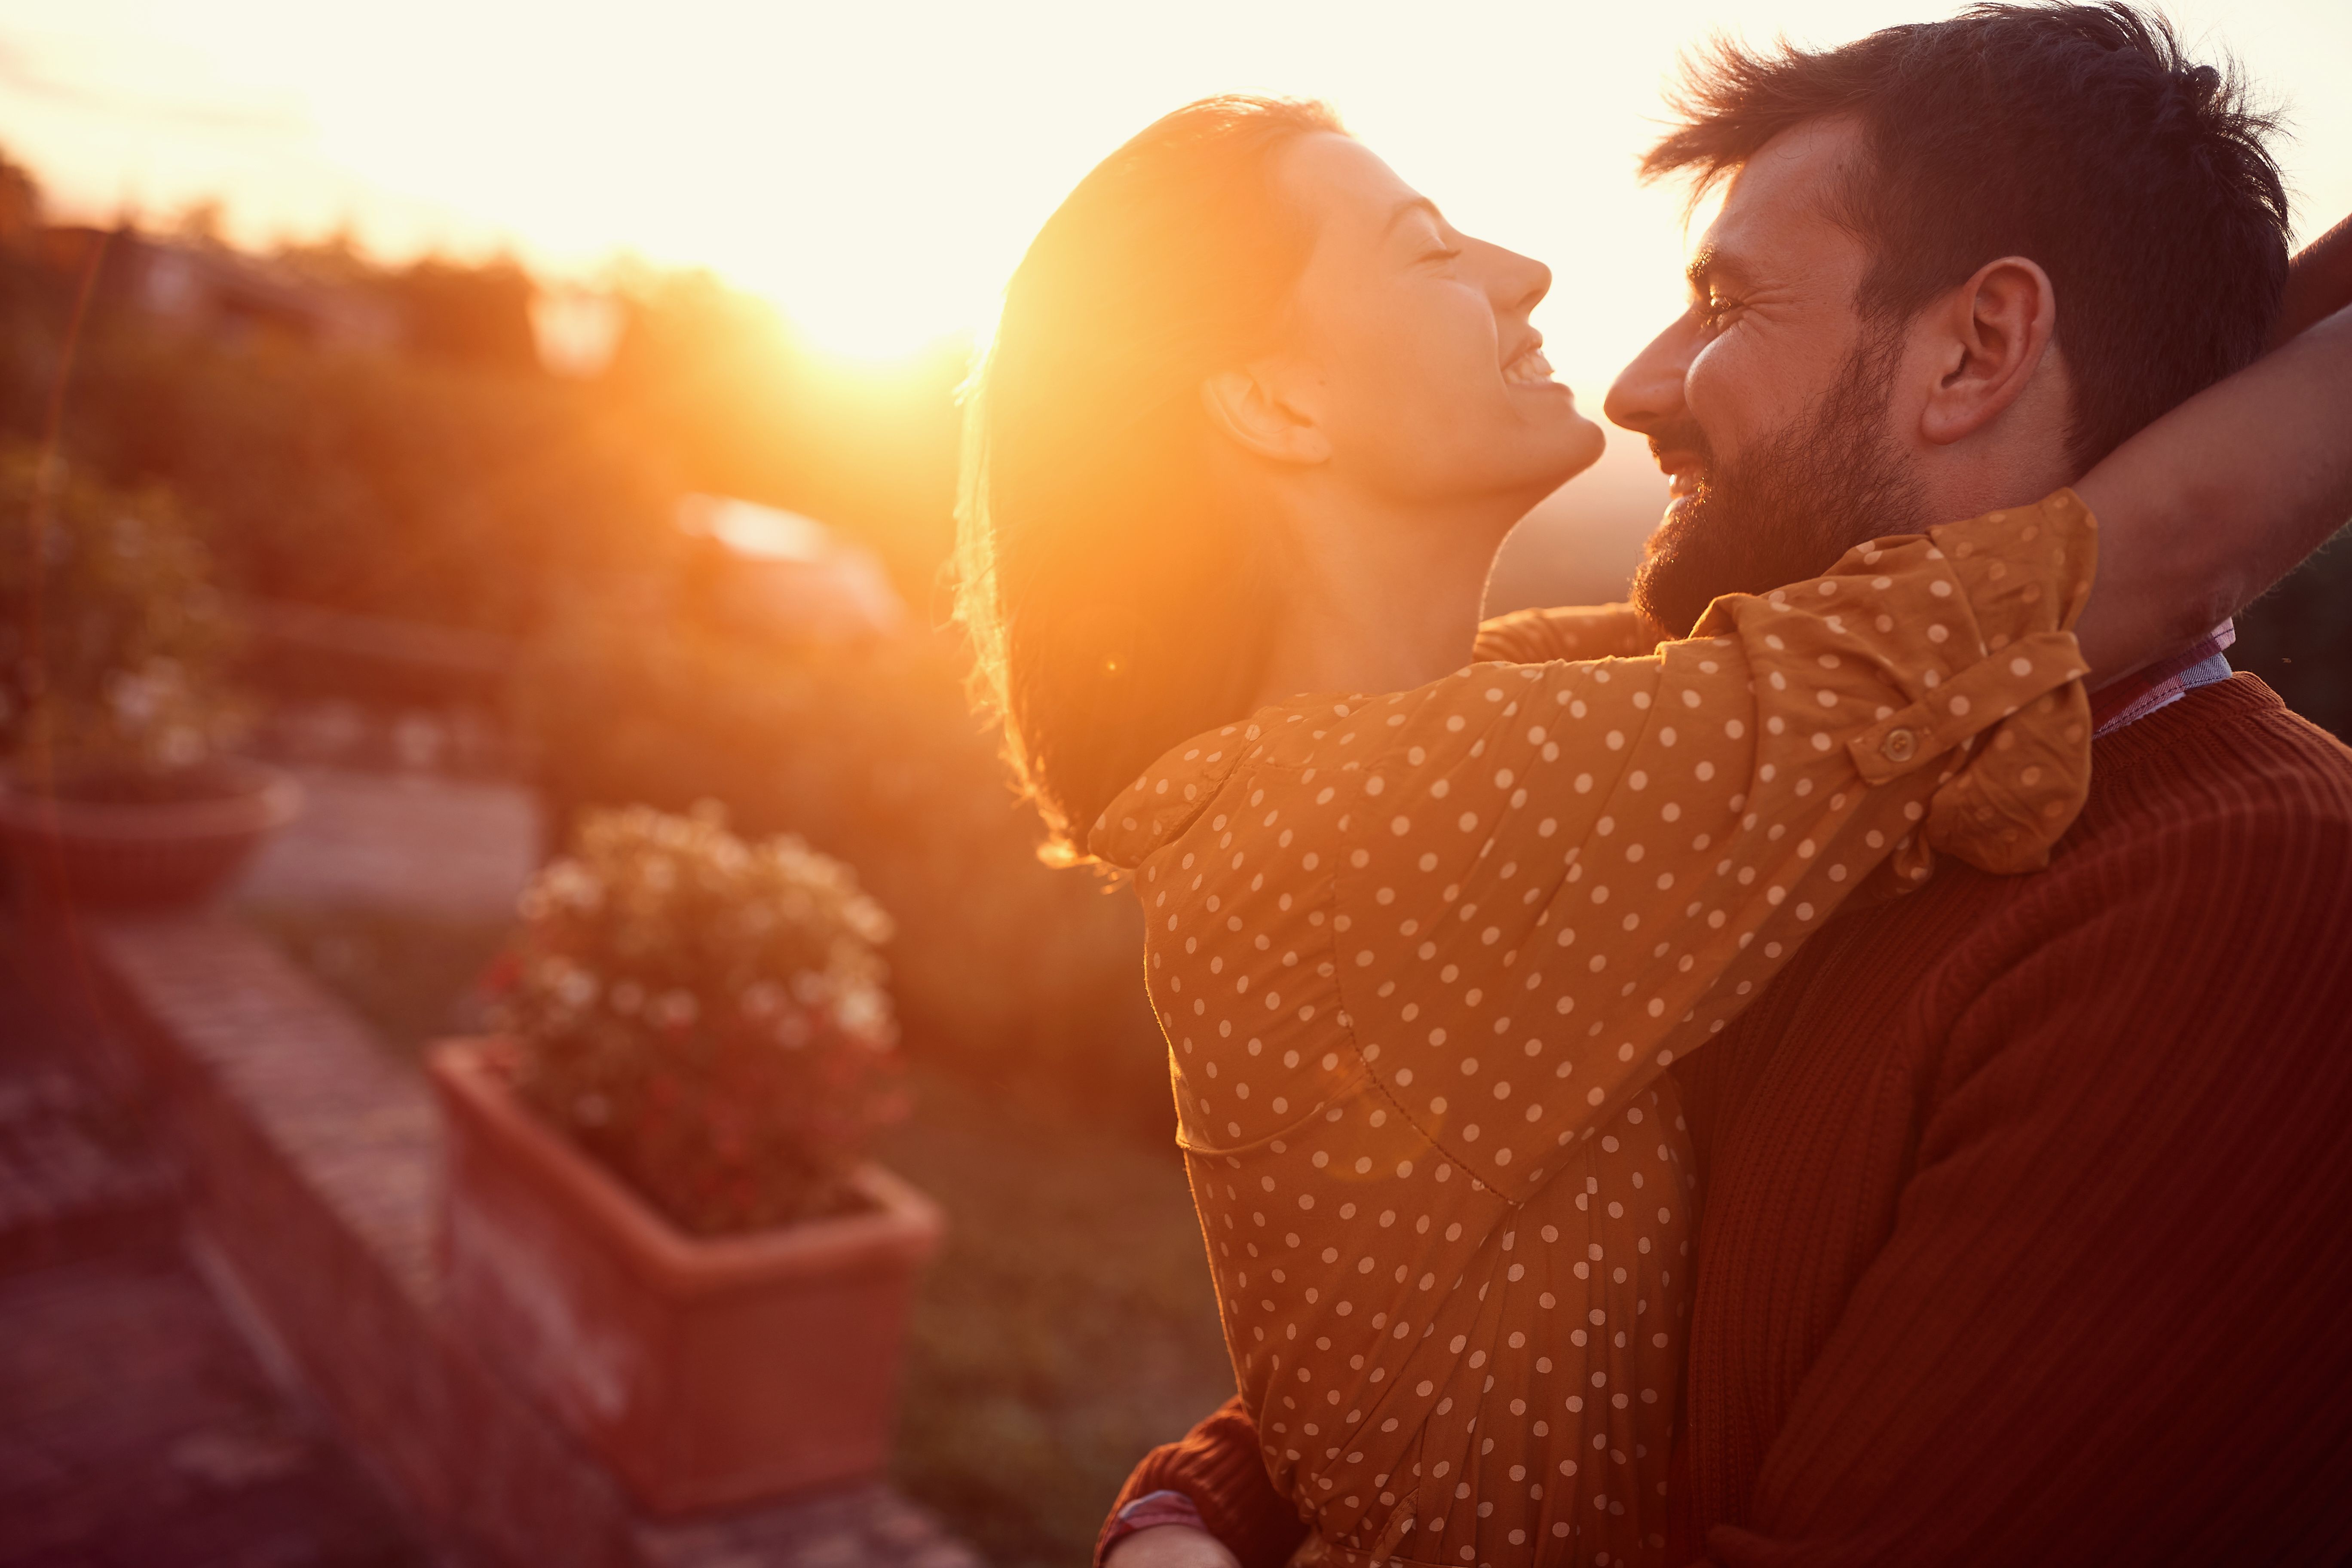 Mann und Frau umarmen sich lächelnd vor einem sonnen untergang